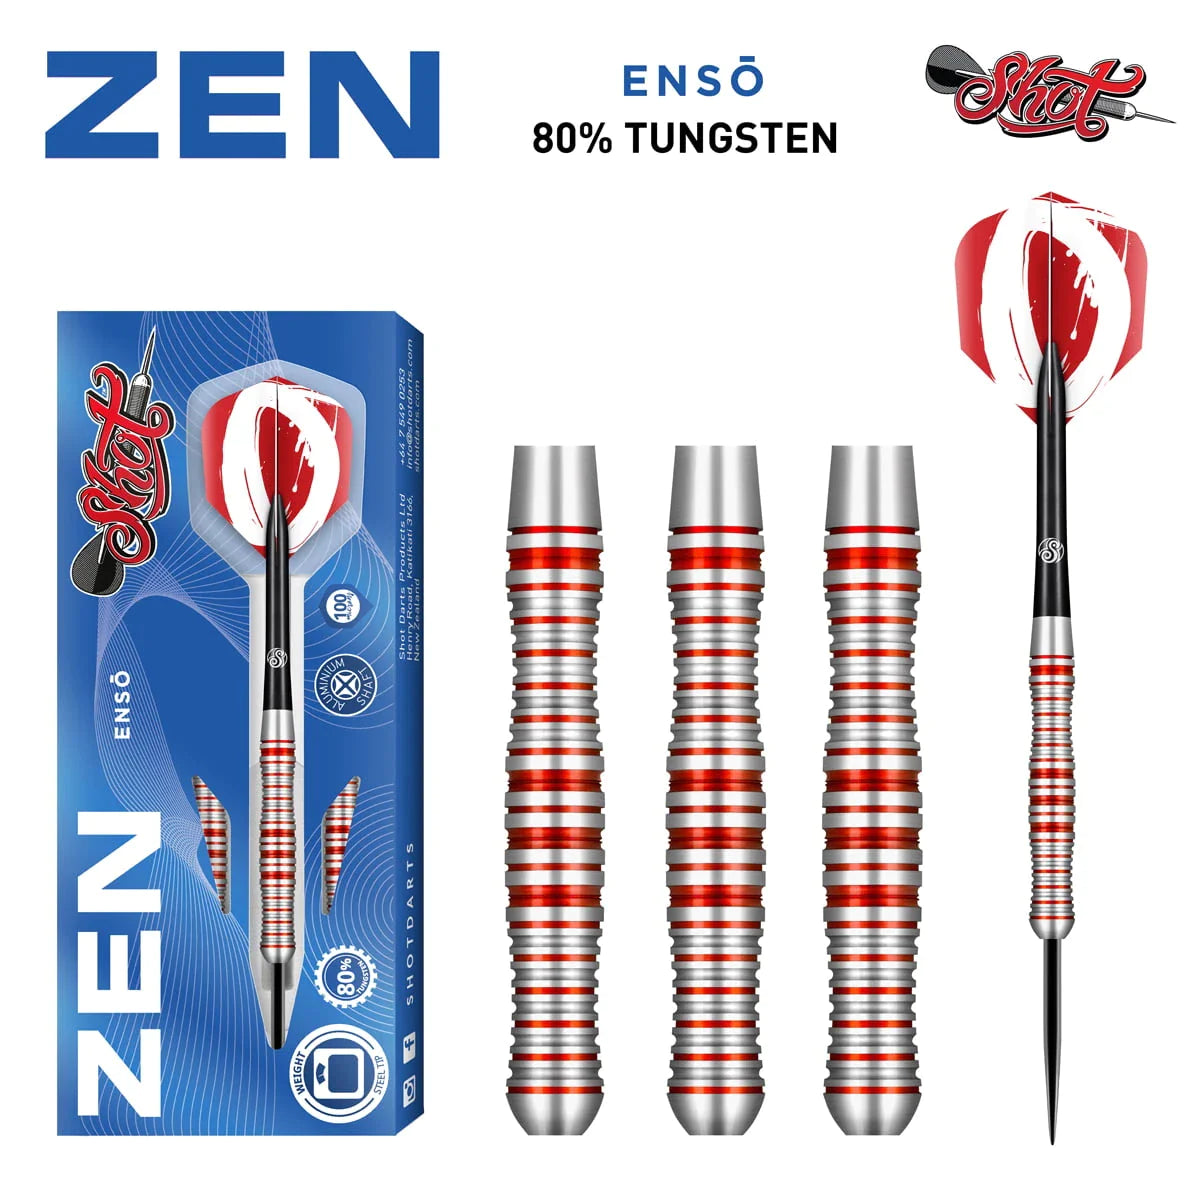 Shot Zen Enso 25g 80% Tungsten Steel Tip Darts